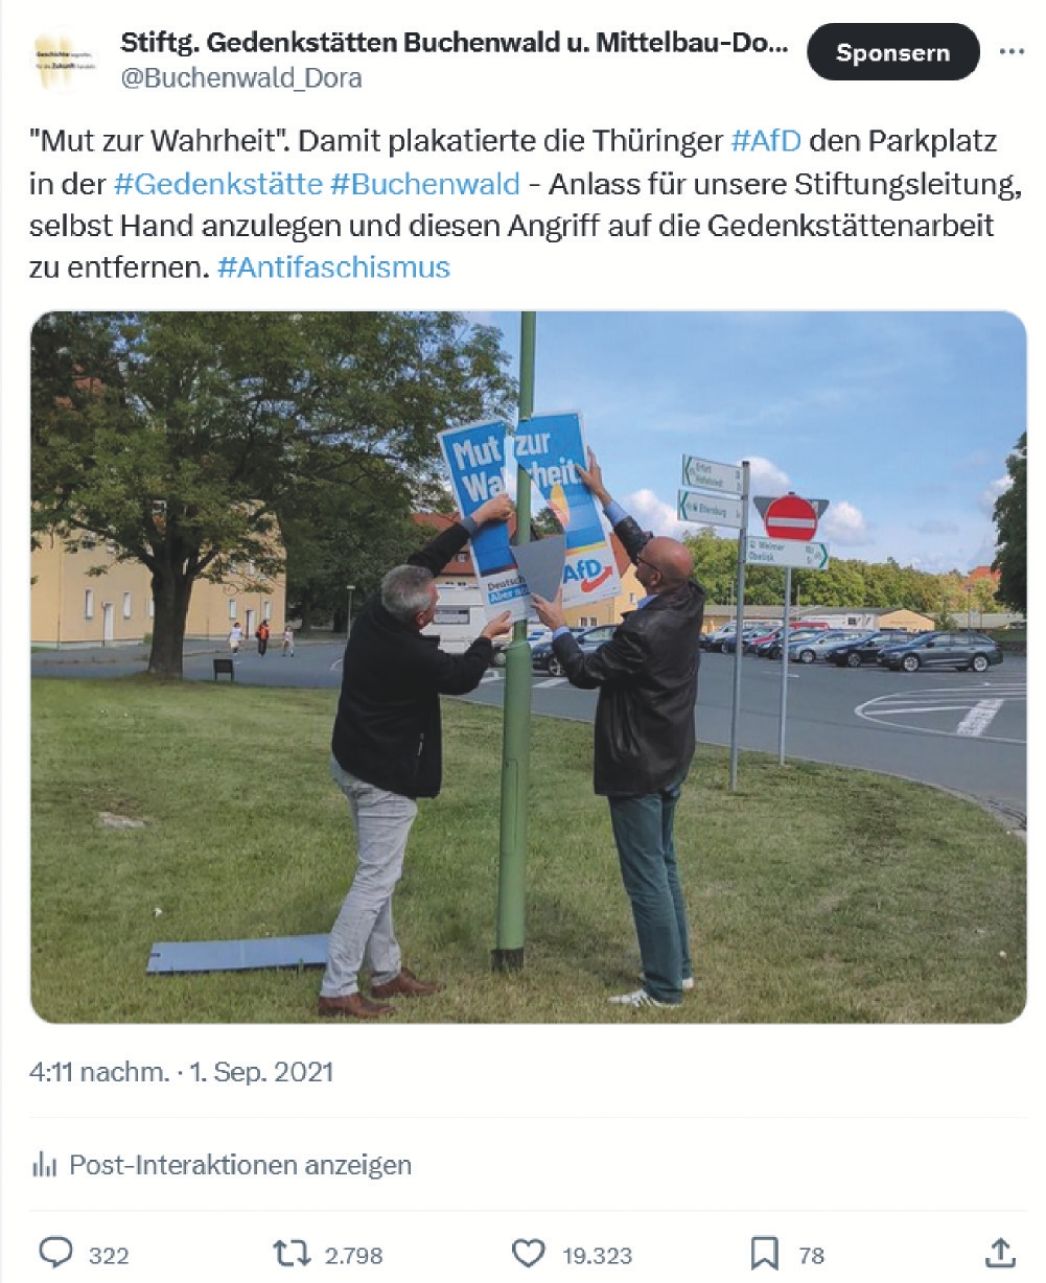 Zwei Mitarbeiter der Gedenkstätte Buchenwald nehmen AfD-Plakat auf Gelände ab: "Mut zur Wahrheit"